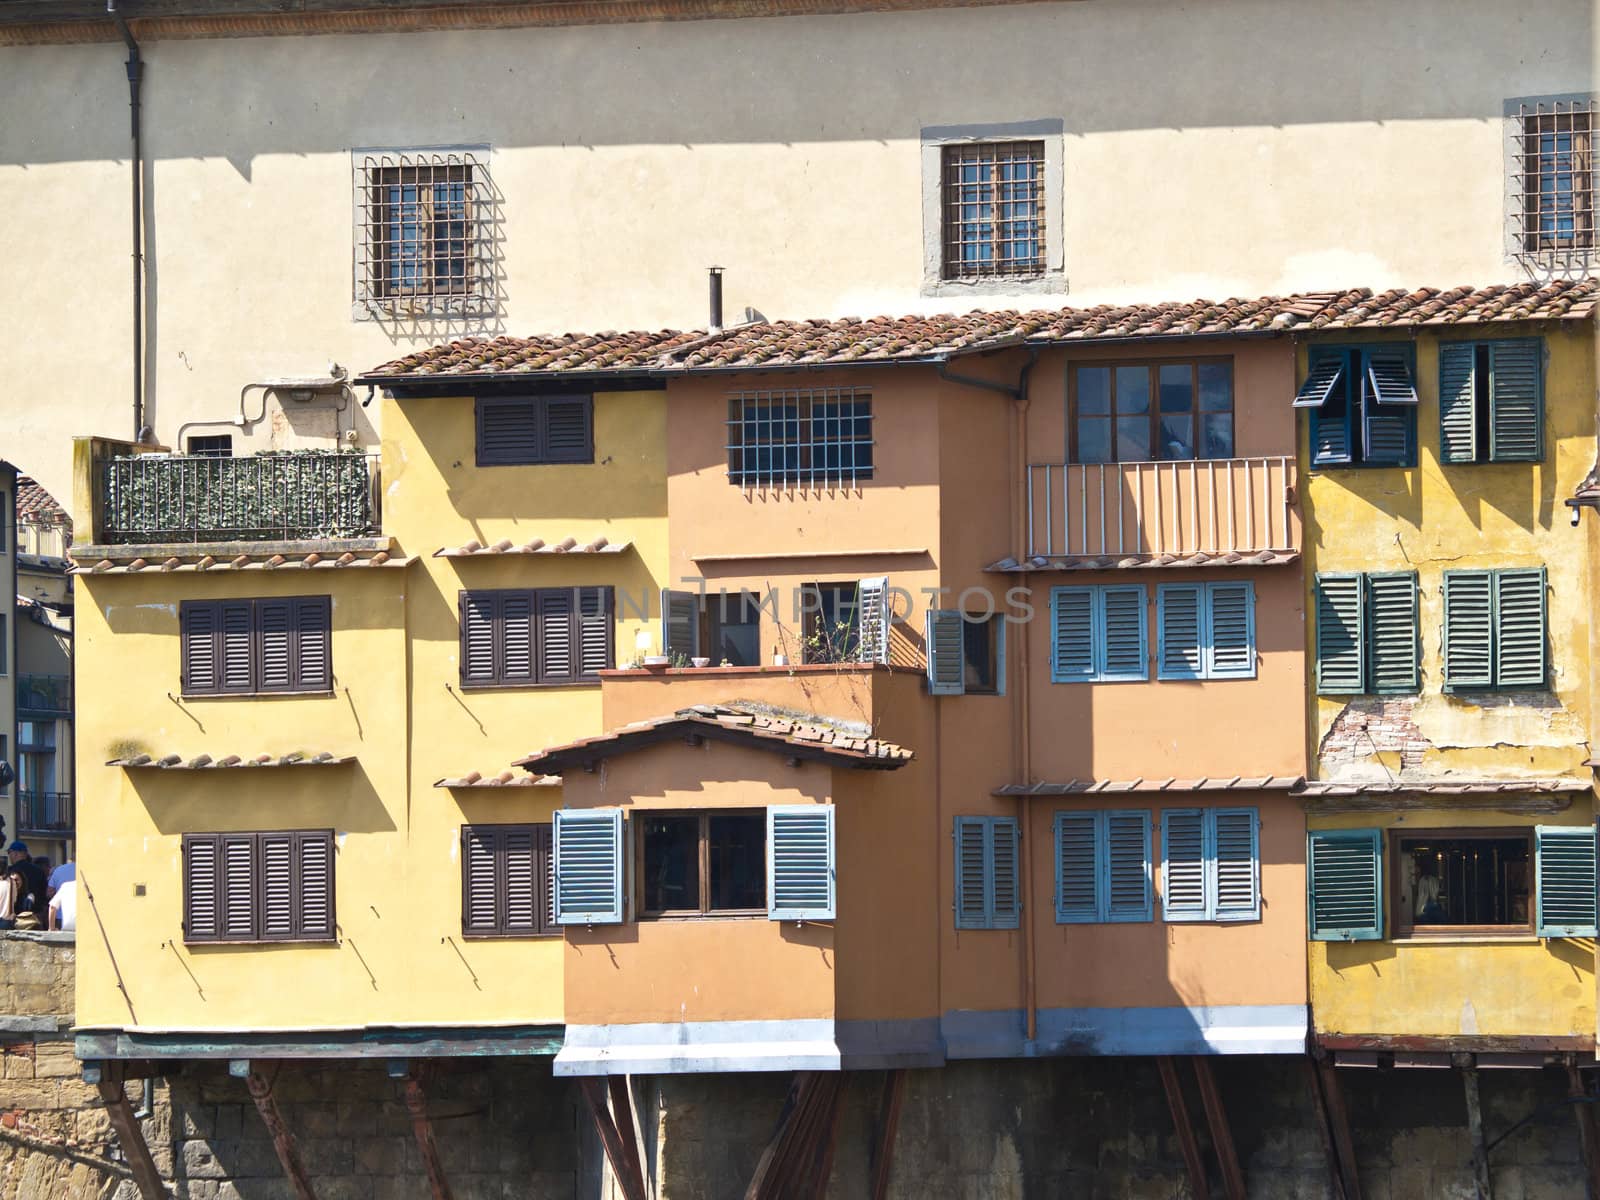  houses onPonte Vechio bridge in Florence